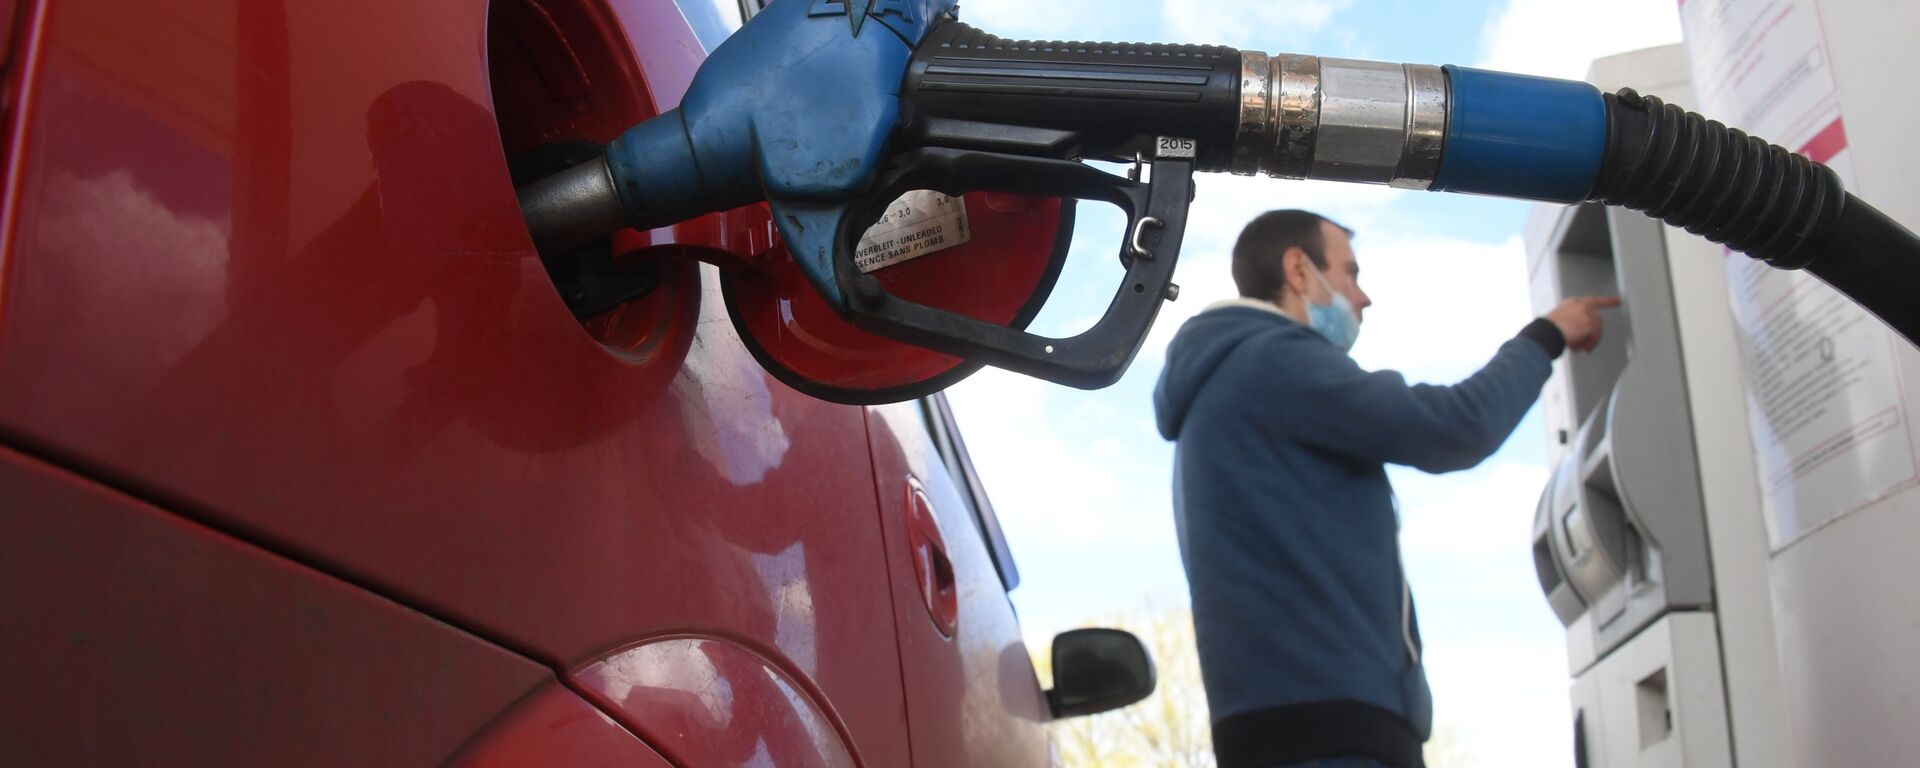 Мужчина оплачивает автомобильное топливо на одной из автозаправочных станций - Sputnik Молдова, 1920, 14.07.2021